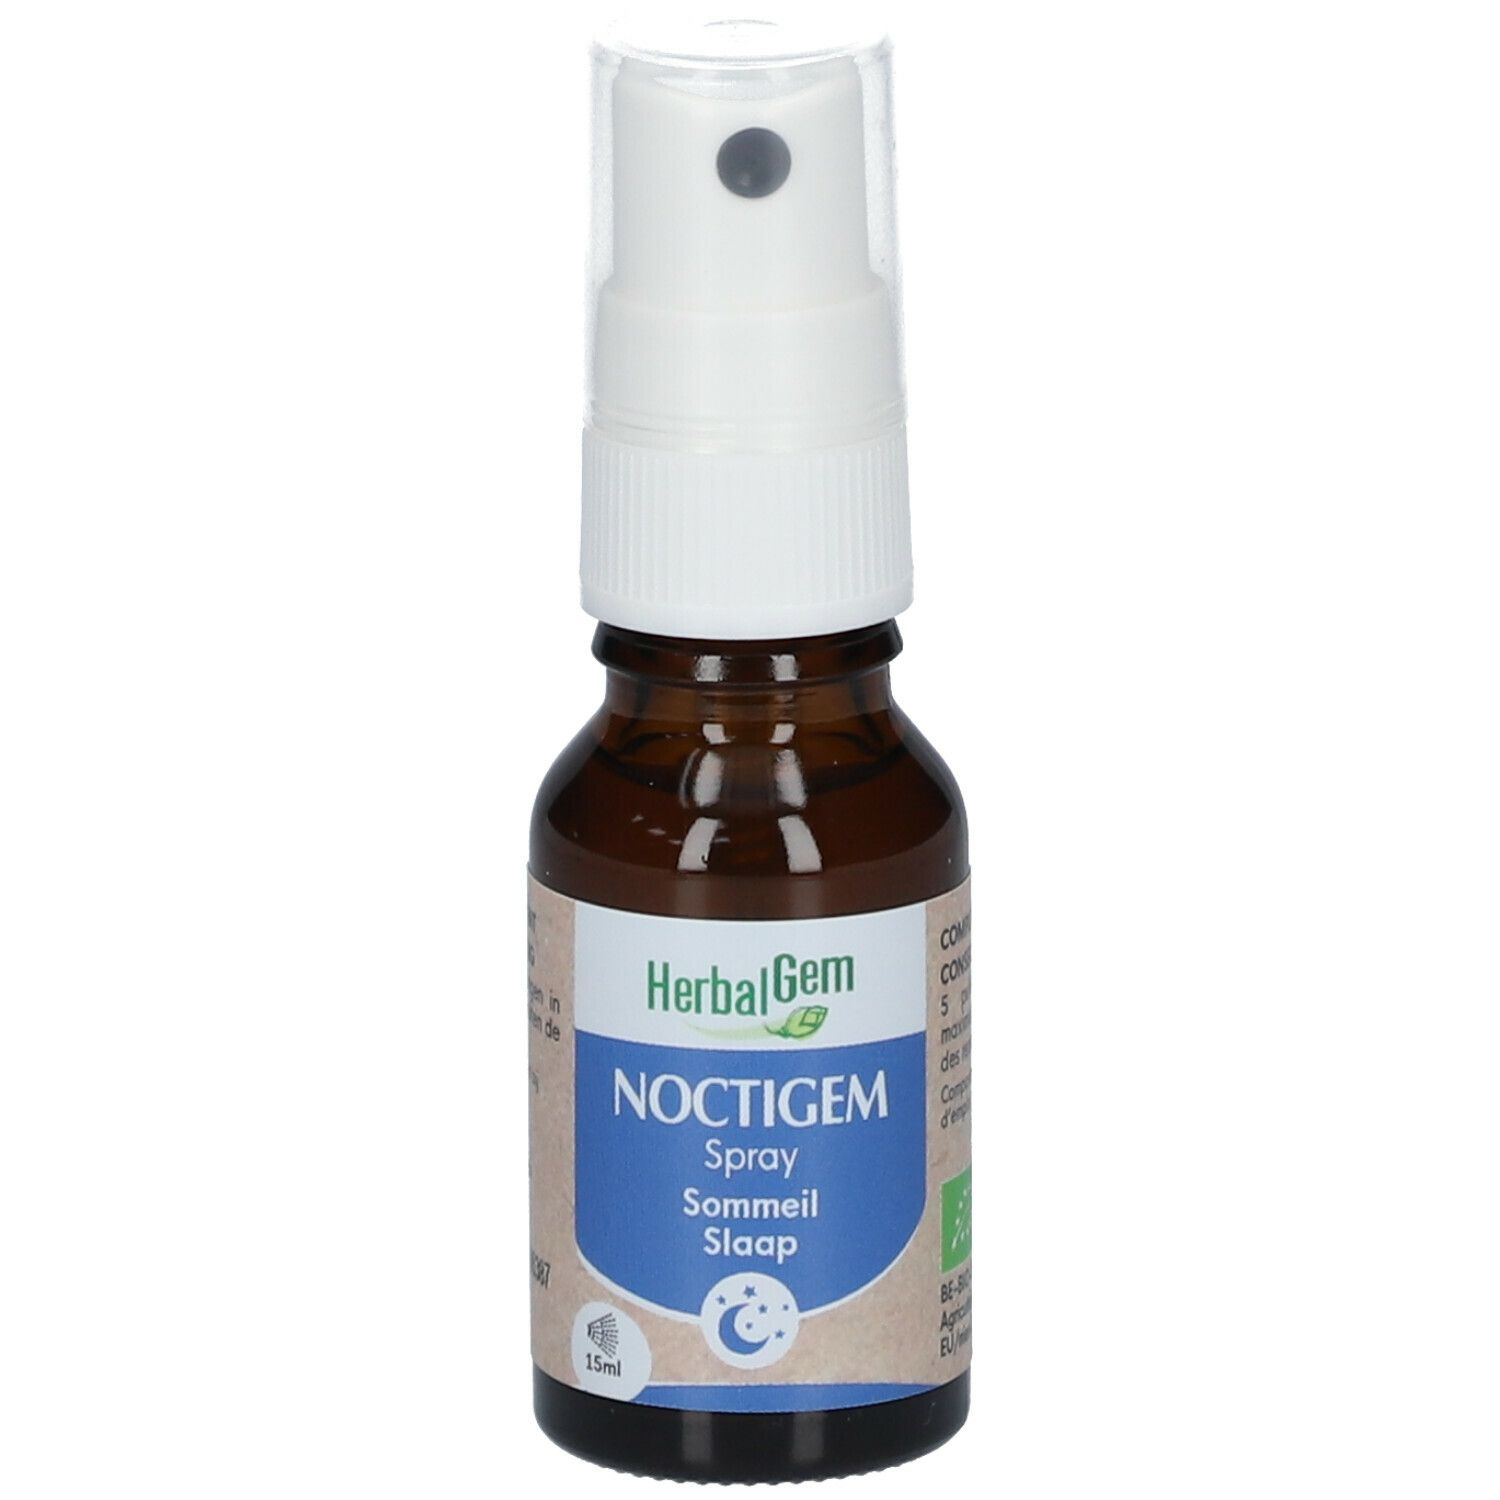 HerbalGem Noctigem - Spray